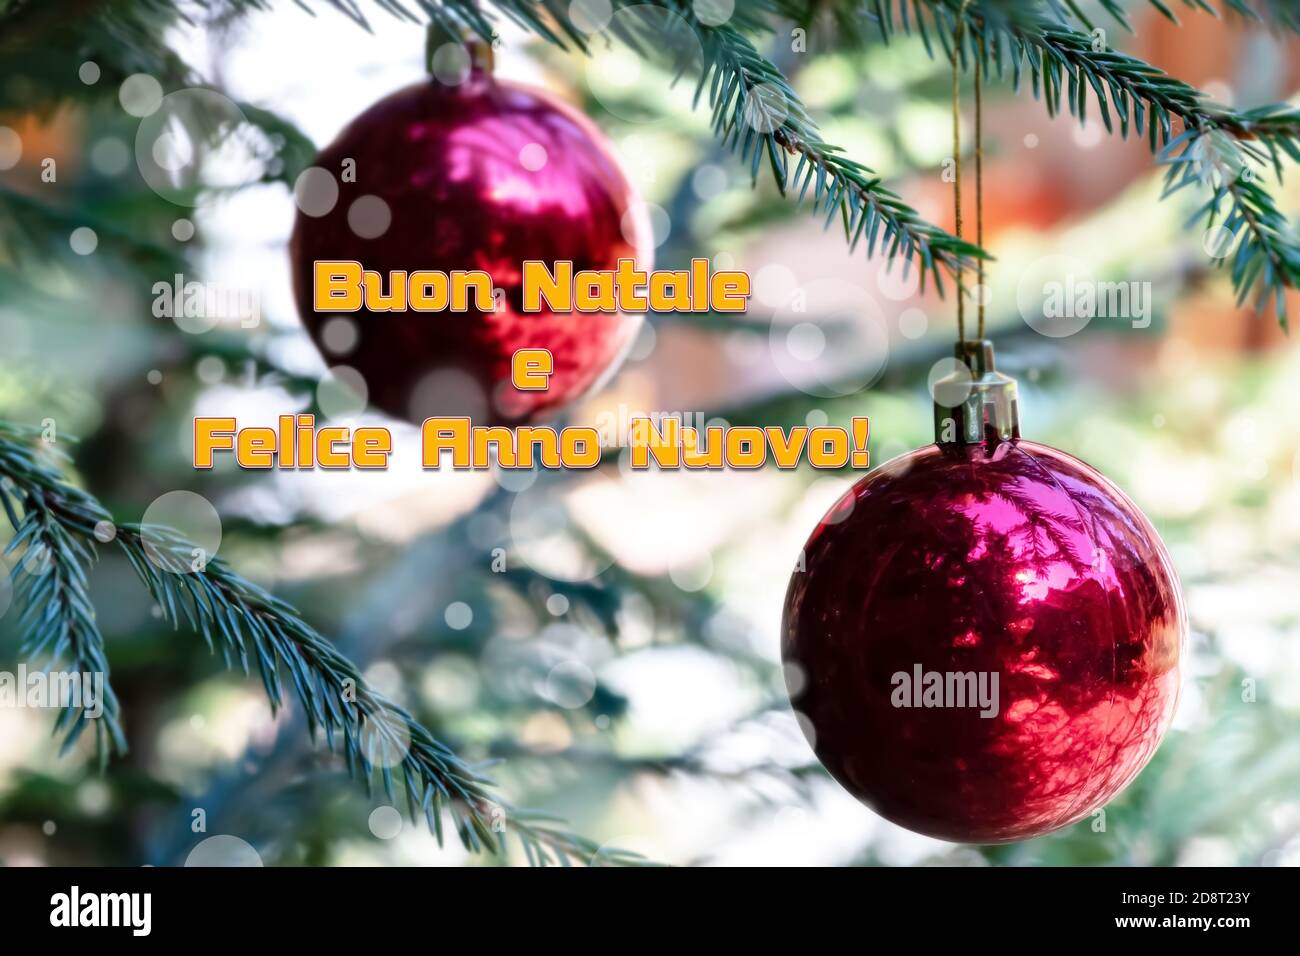 Weihnachtsgrüße auf Italienisch bedeutet Frohe Weihnachten und Frohe  Weihnachten Jahr auf verschwommene rote Kugeln mit Reflexion schmücken das  Grün Zweige des Christus Stockfotografie - Alamy